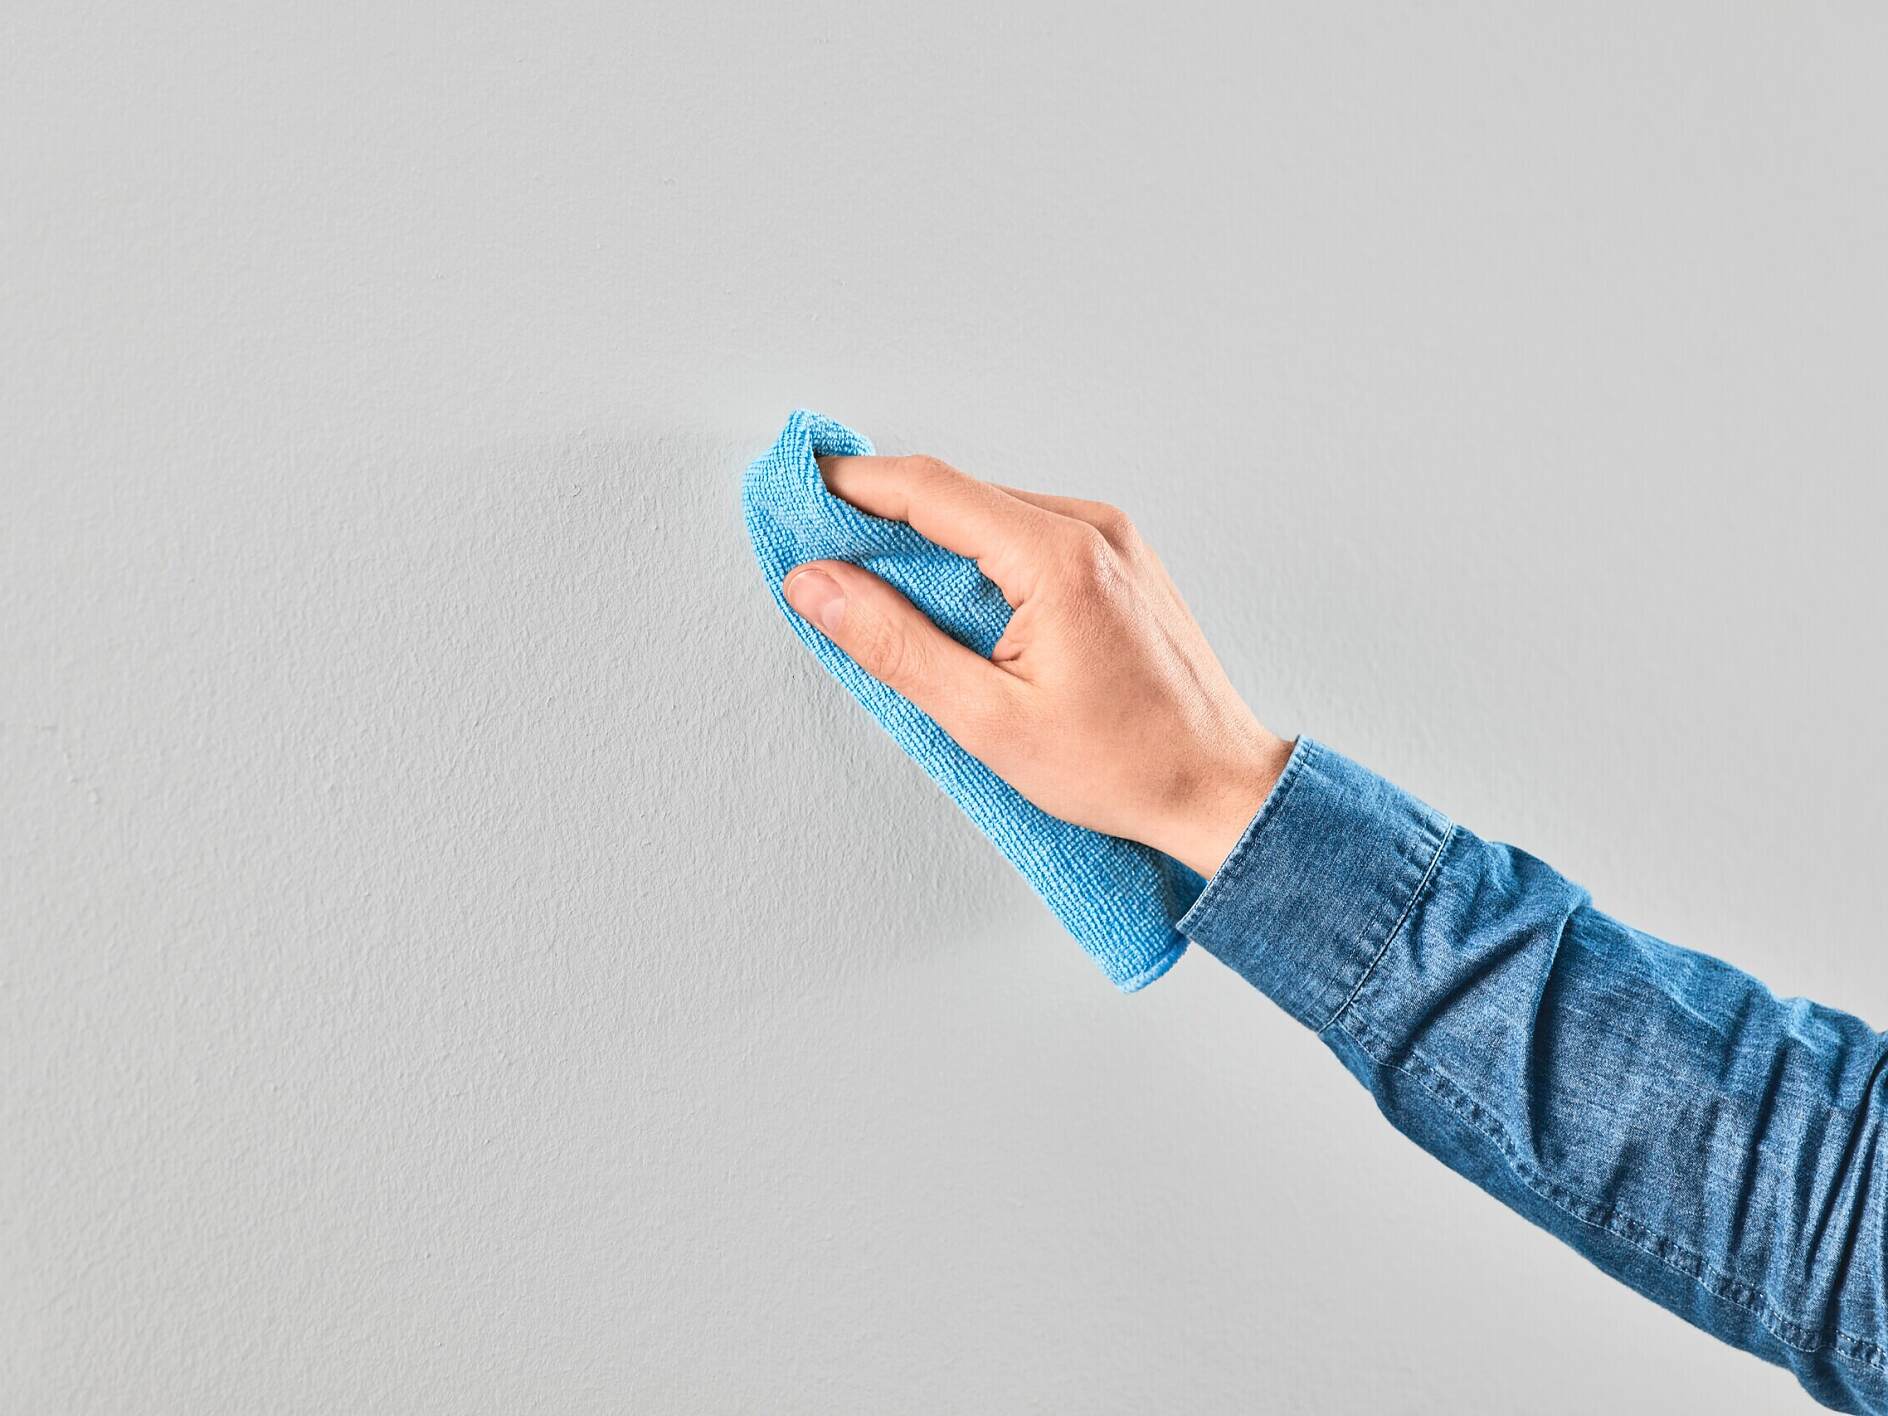 TESA - Crochet adhésif pour papier peint et plâtre 0,5kg x2 - Crochet  adhésif pour accrocher des objets de décoration ou suspendr - Livraison  gratuite dès 120€